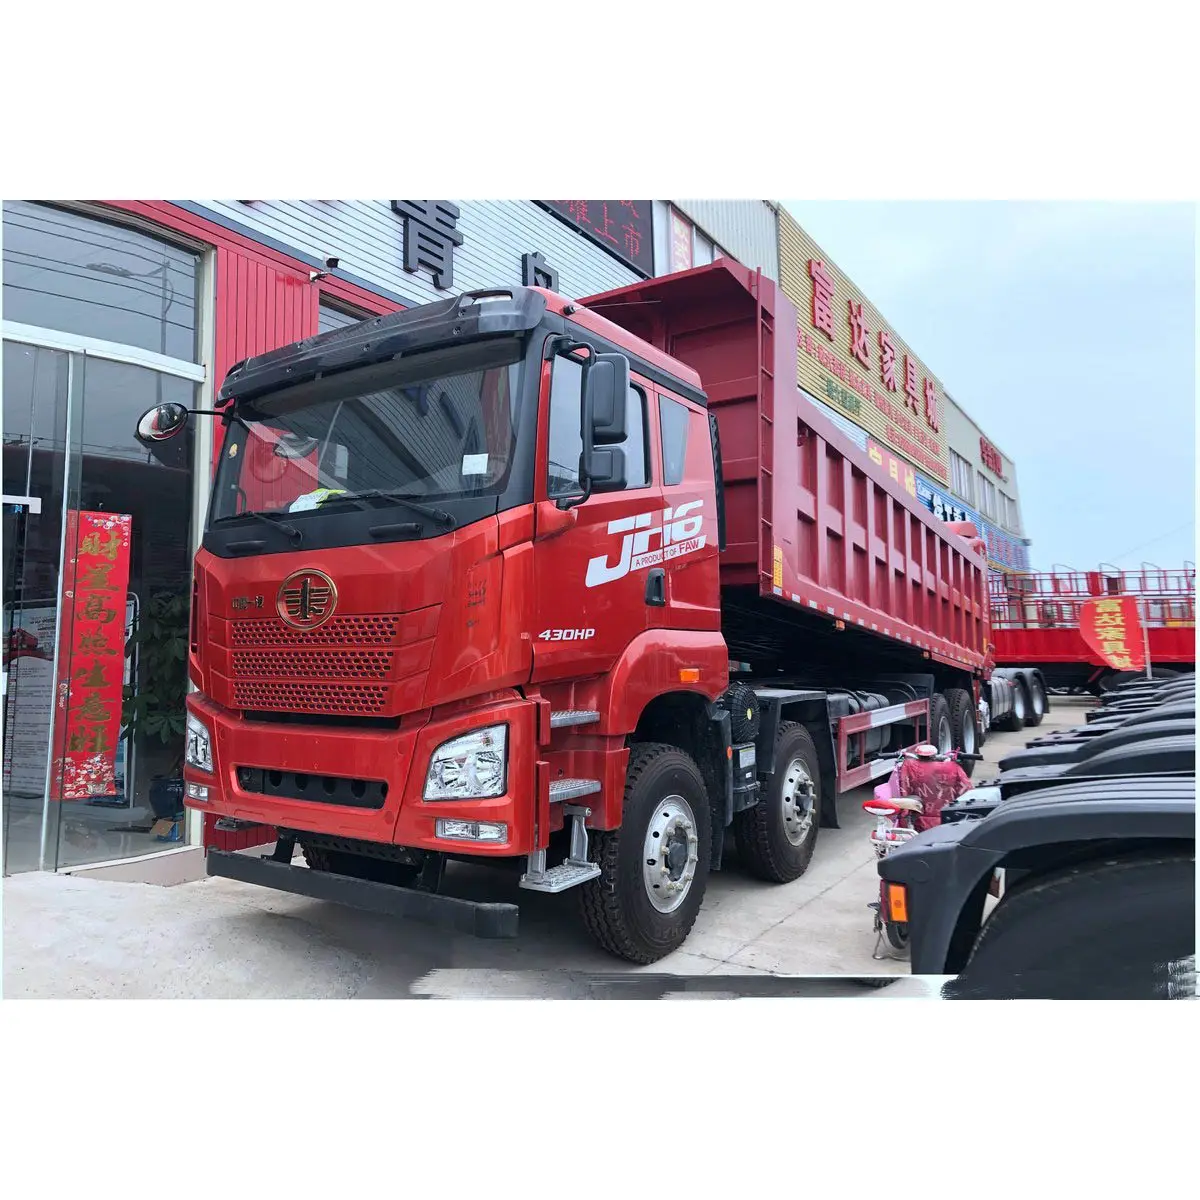 क़िंगदाओ मुक्ति JH6 भारी ट्रक 550 हॉर्स पावर 8x48.8 मीटर डंप ट्रक